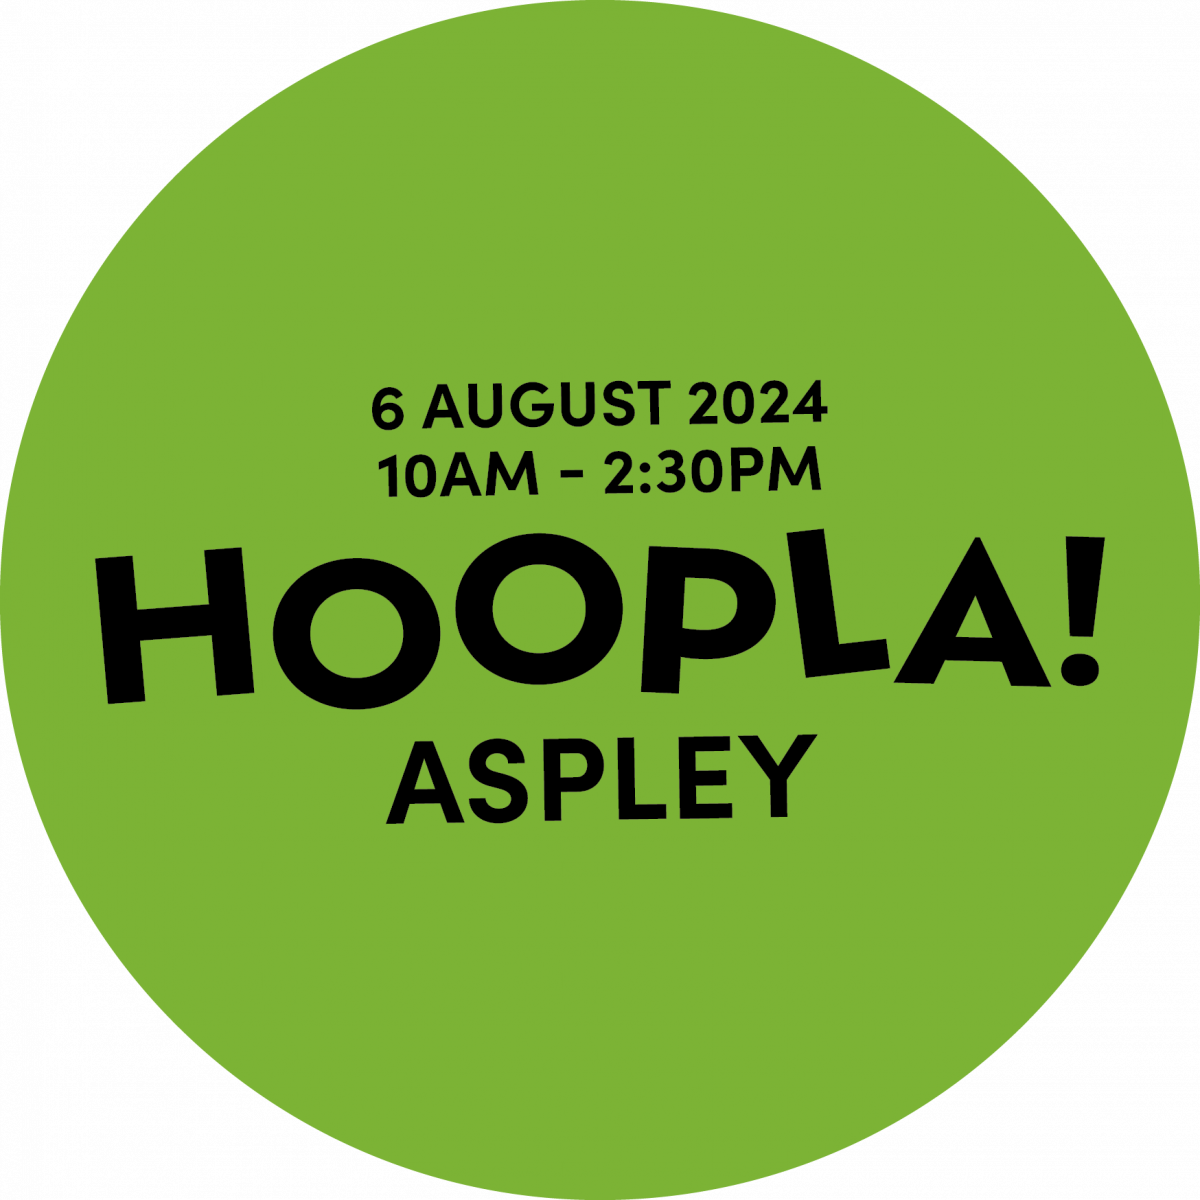 Hoopla! Aspley